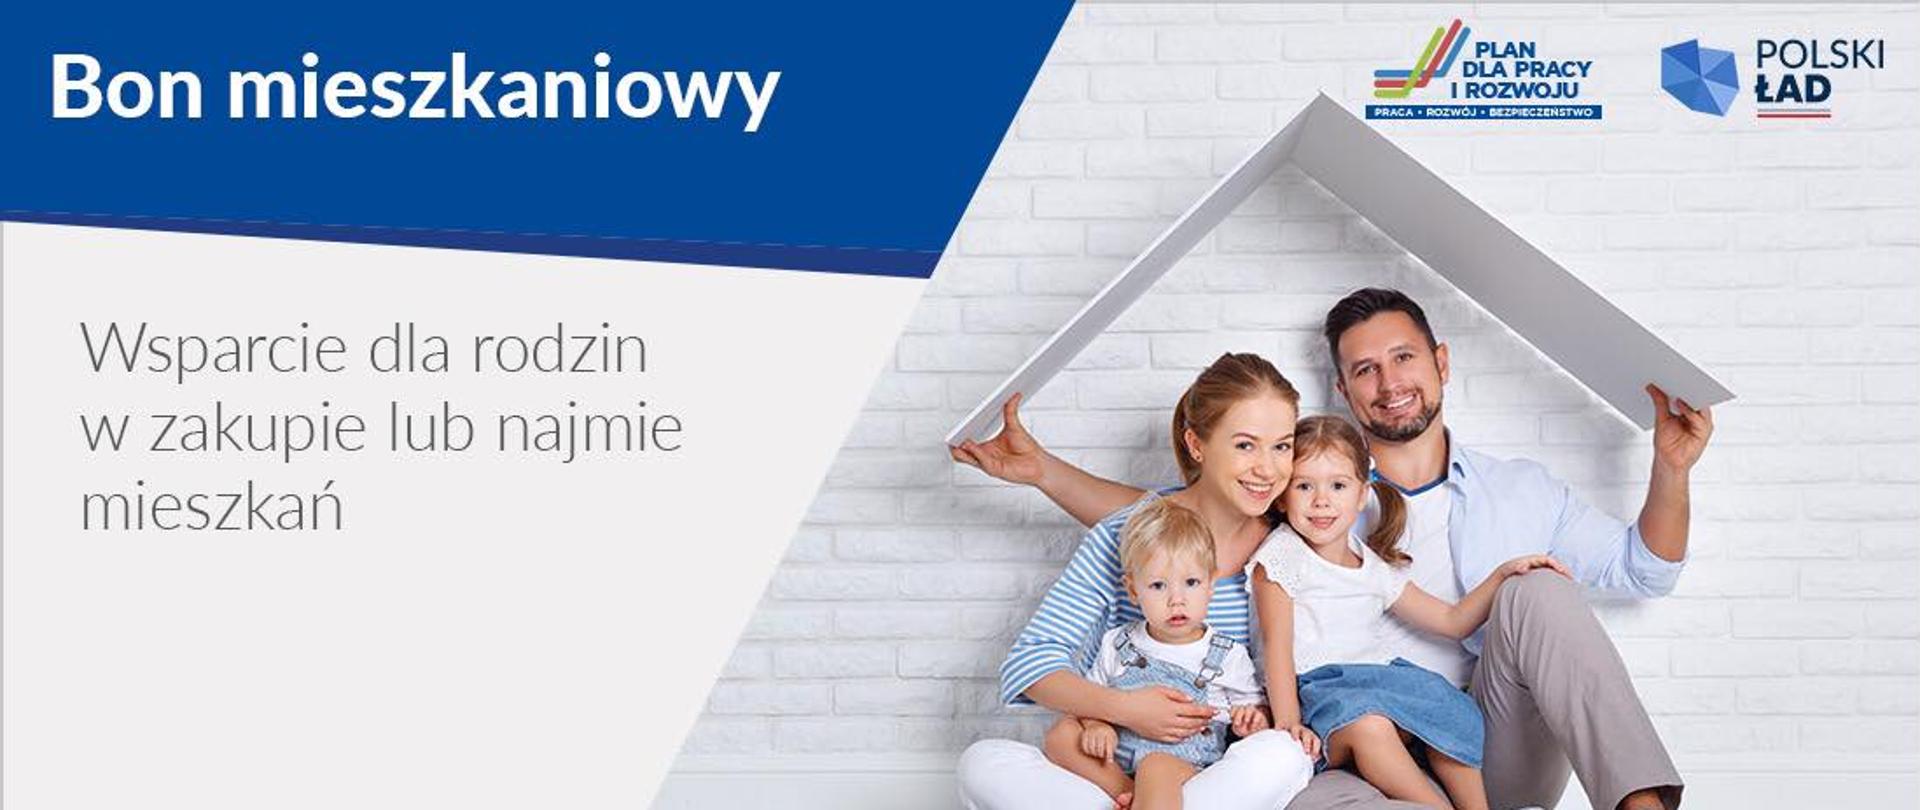 Na zdjęciu rodzina z dwojgiem dzieci i napis: wsparcie dla rodzin w zakupie lub najmie mieszkań